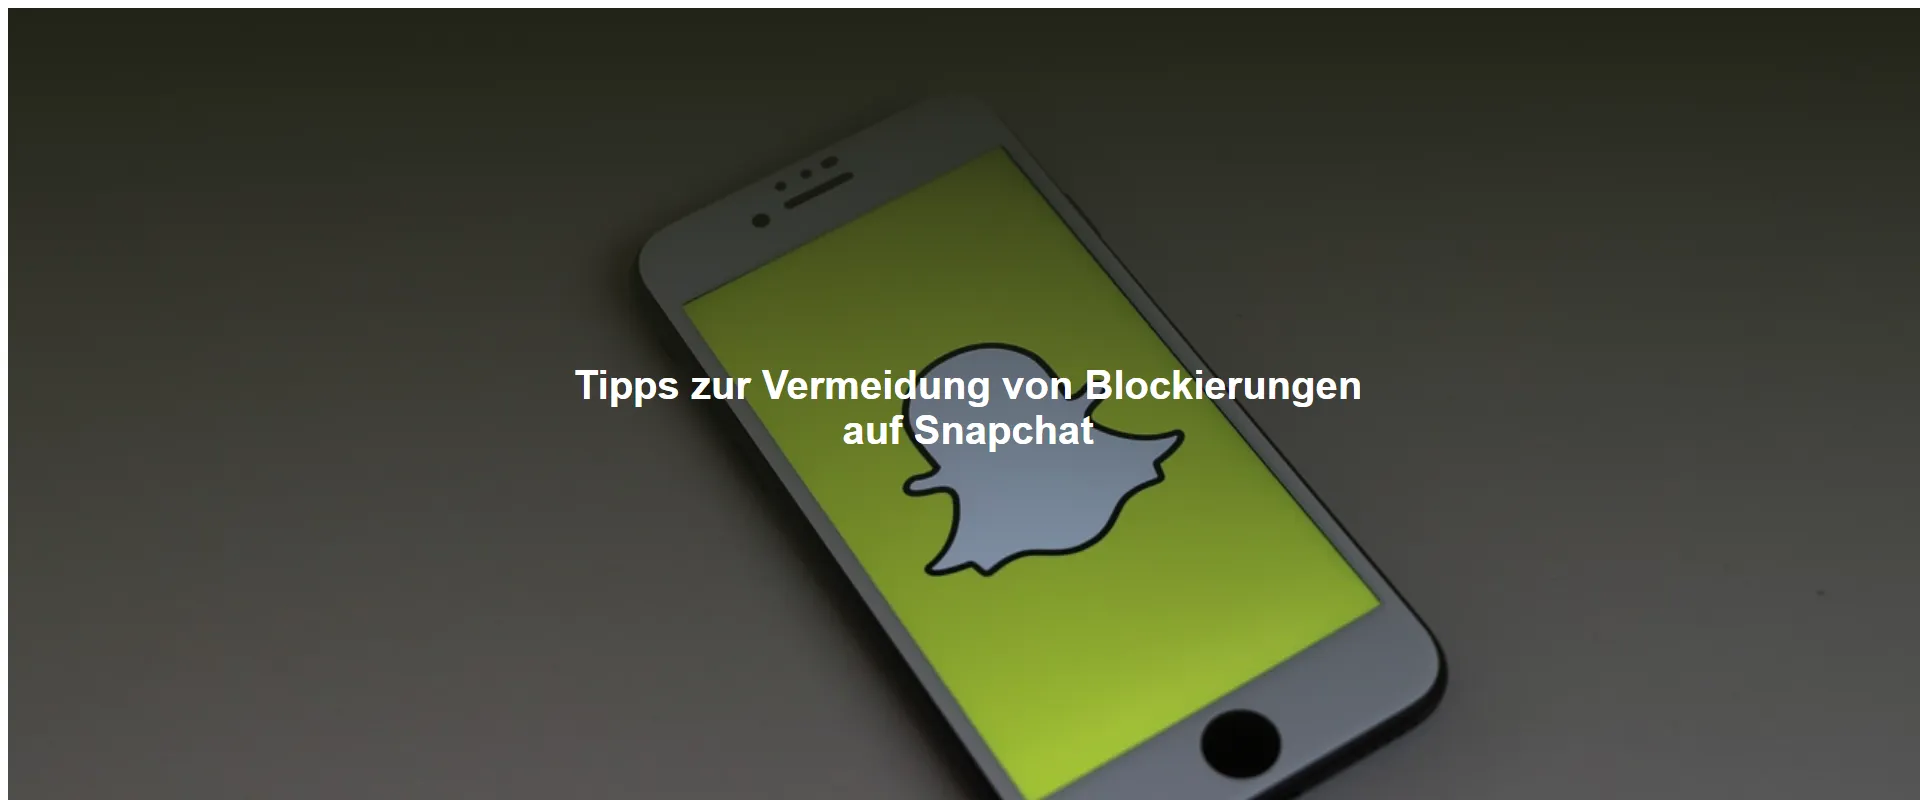 Tipps zur Vermeidung von Blockierungen auf Snapchat